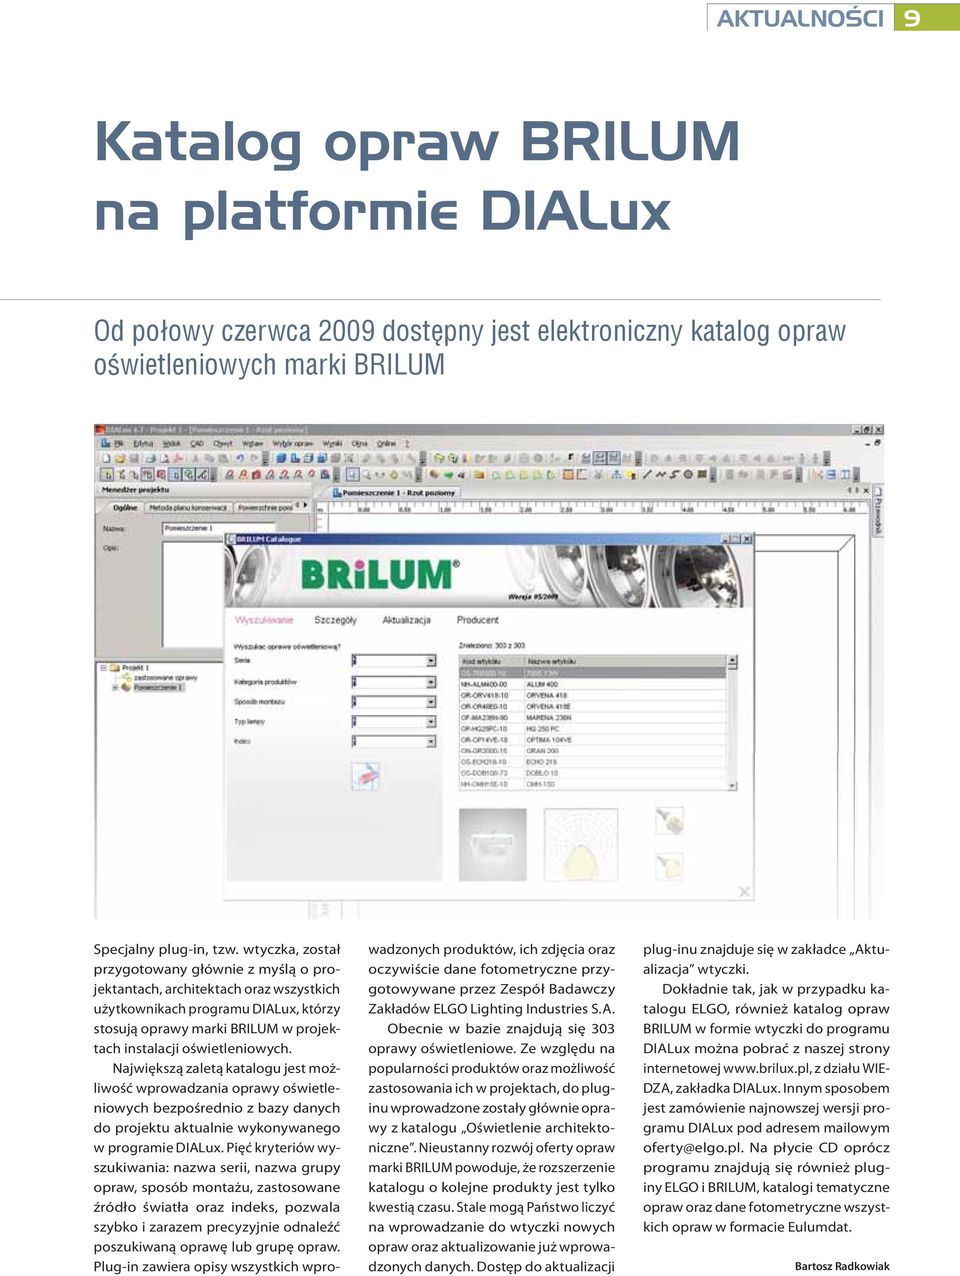 Największą zaletą katalogu jest możliwość wprowadzania oprawy oświetleniowych bezpośrednio z bazy danych do projektu aktualnie wykonywanego w programie DIALux.